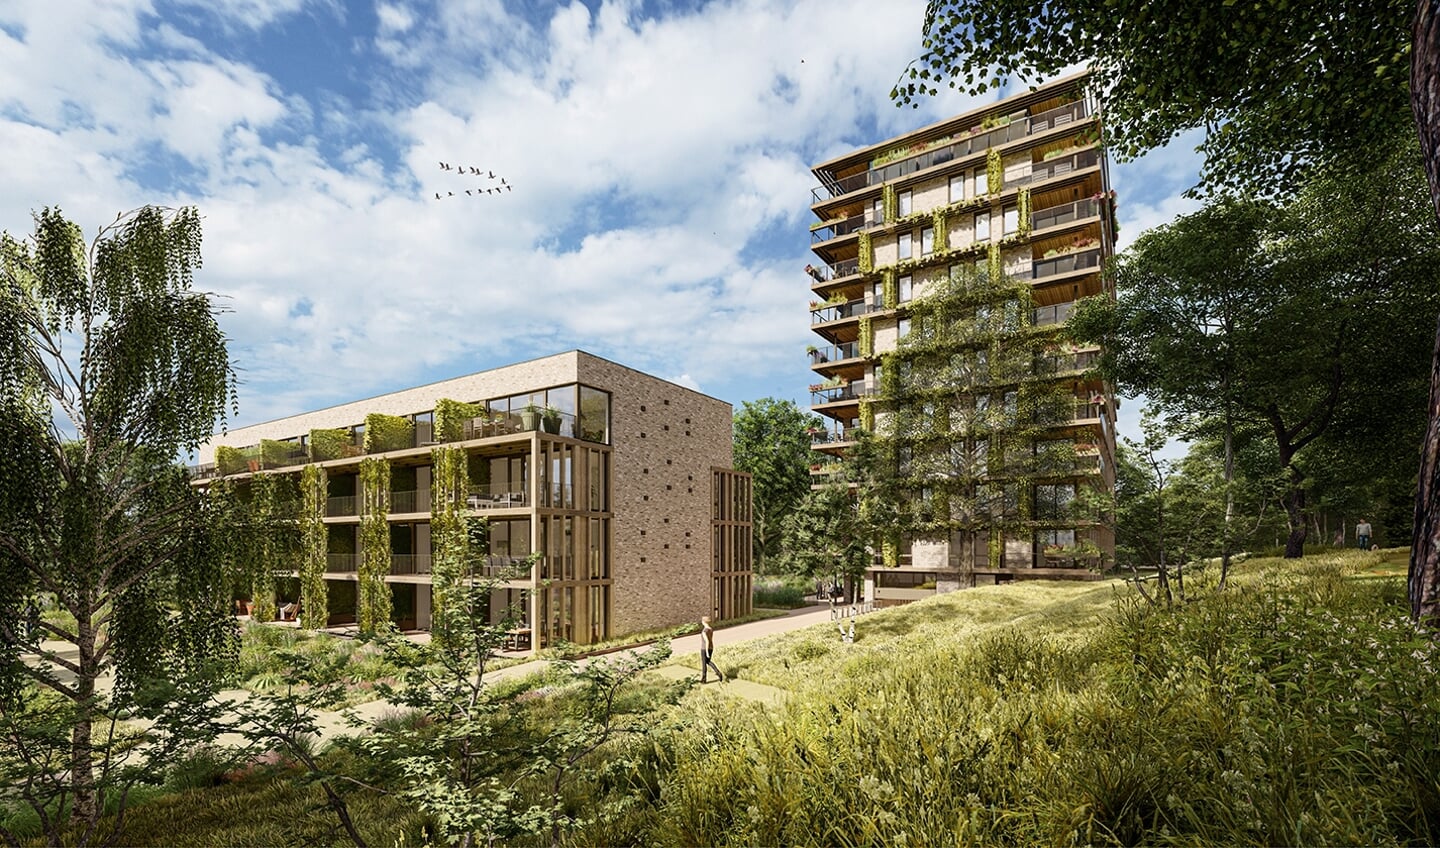 Het project De Veluwse Proeftuin komt direct langs de rand van het Sysseltse bos aan de noordkant van het WFC-gebied. De twee gebouwen bevatten in totaal 59 appartementen. 